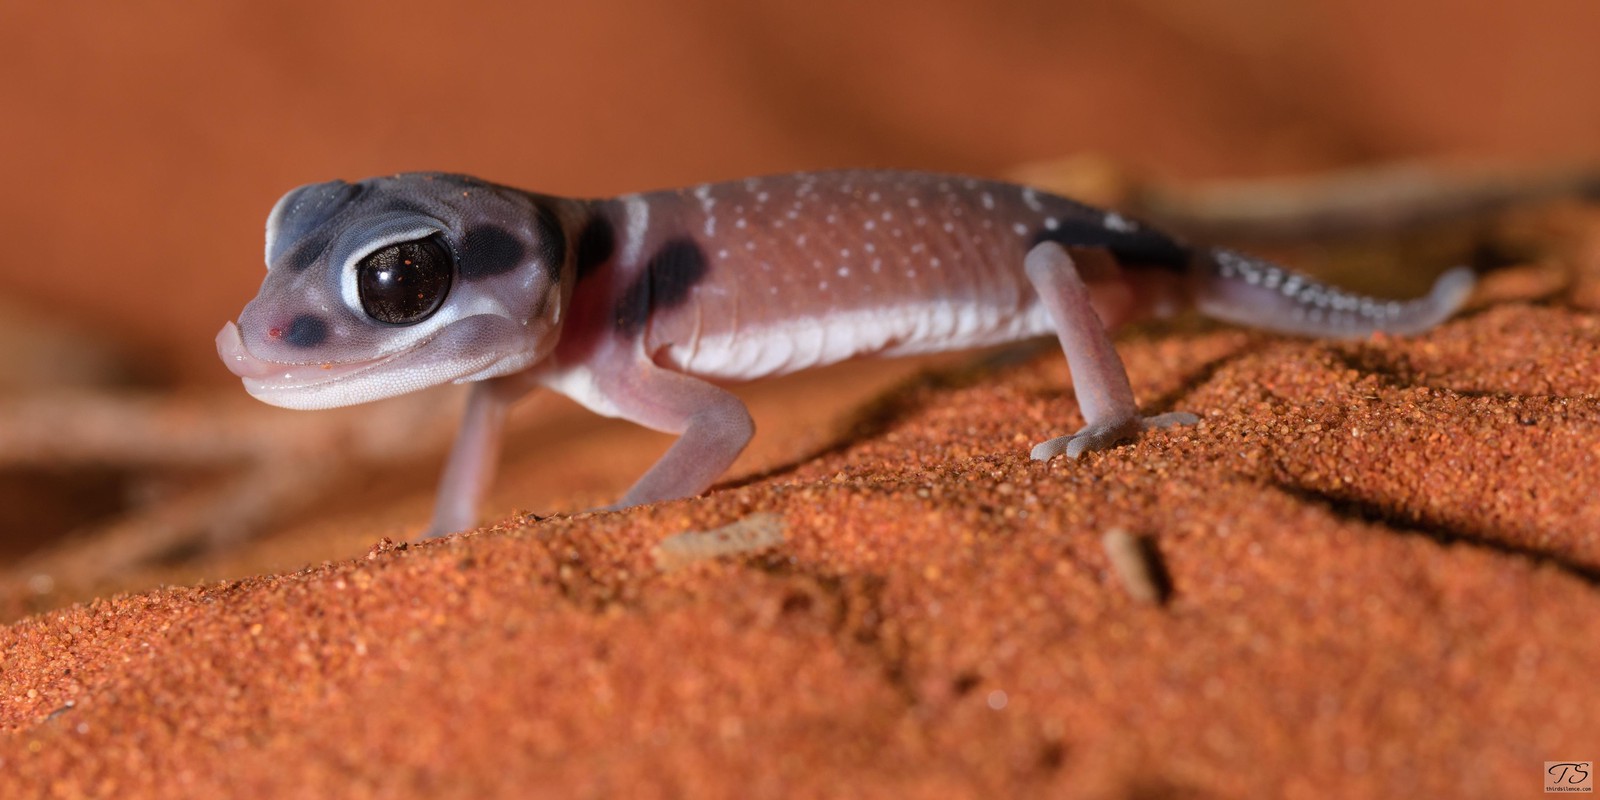 A knob-tailed gecko at Yulara, NT